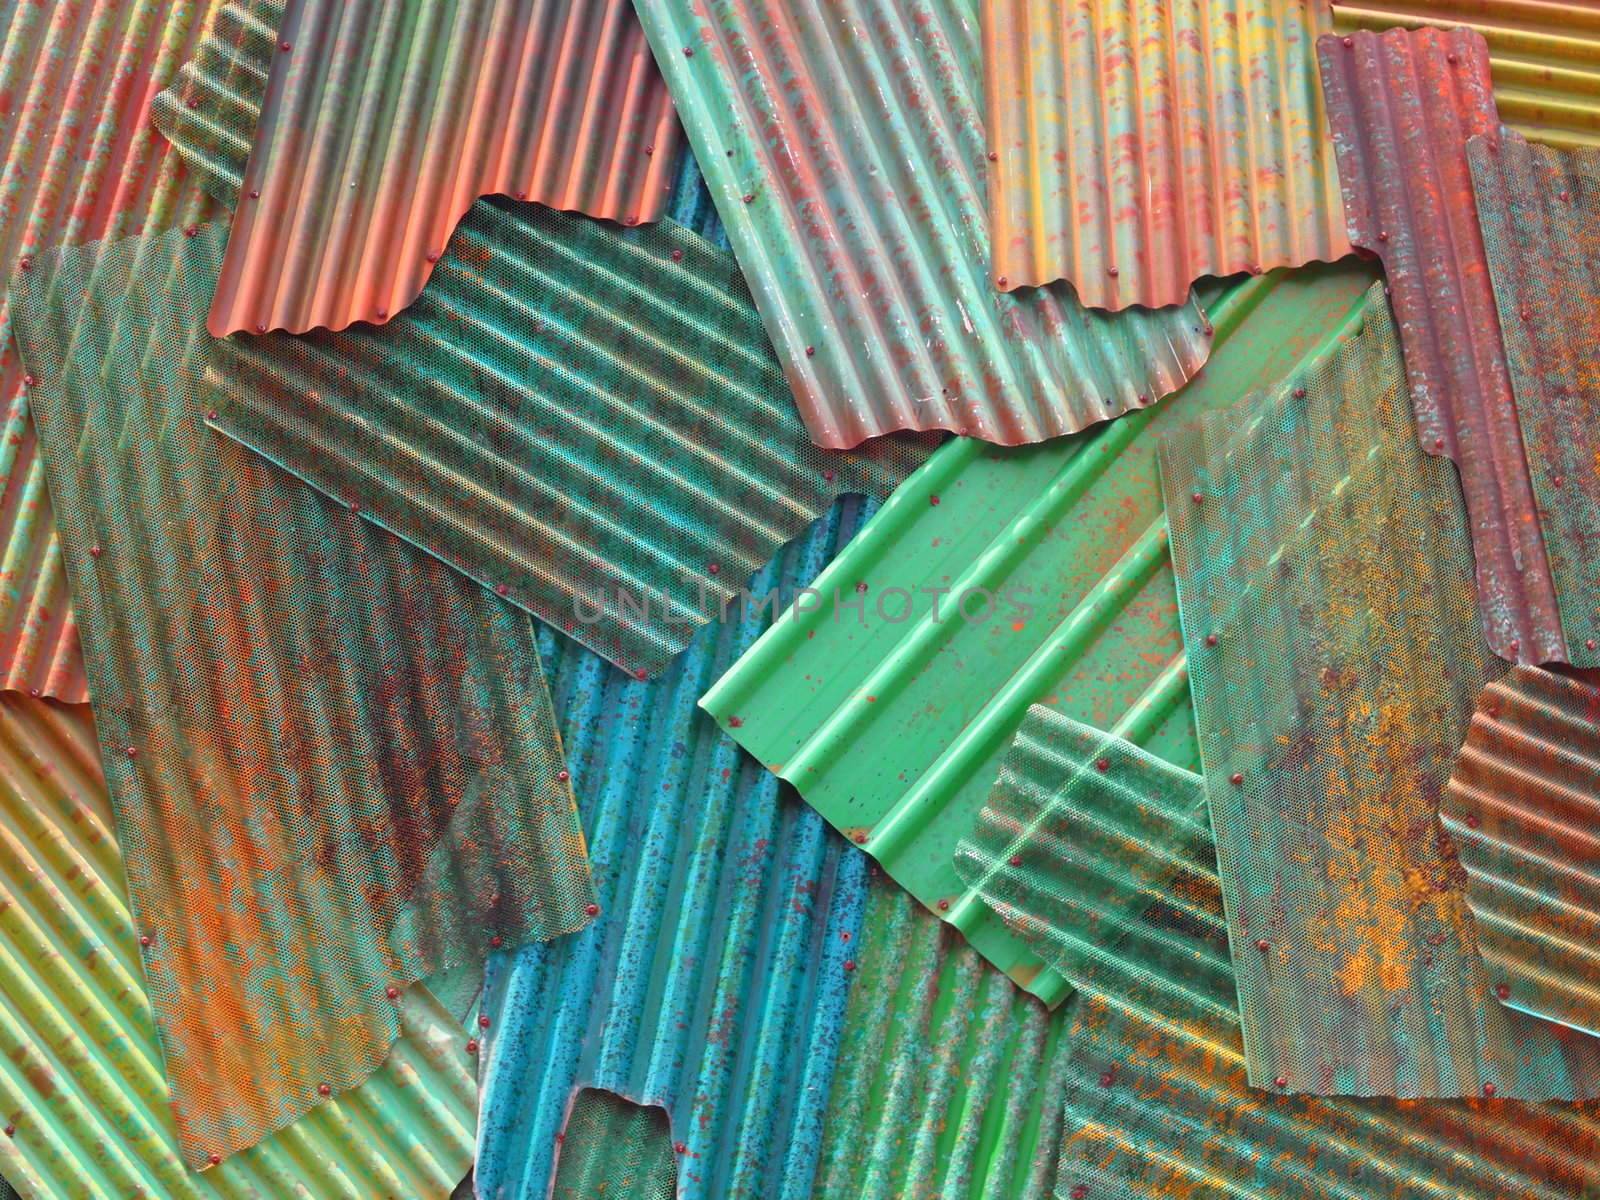 corrugated metal sheets by zkruger